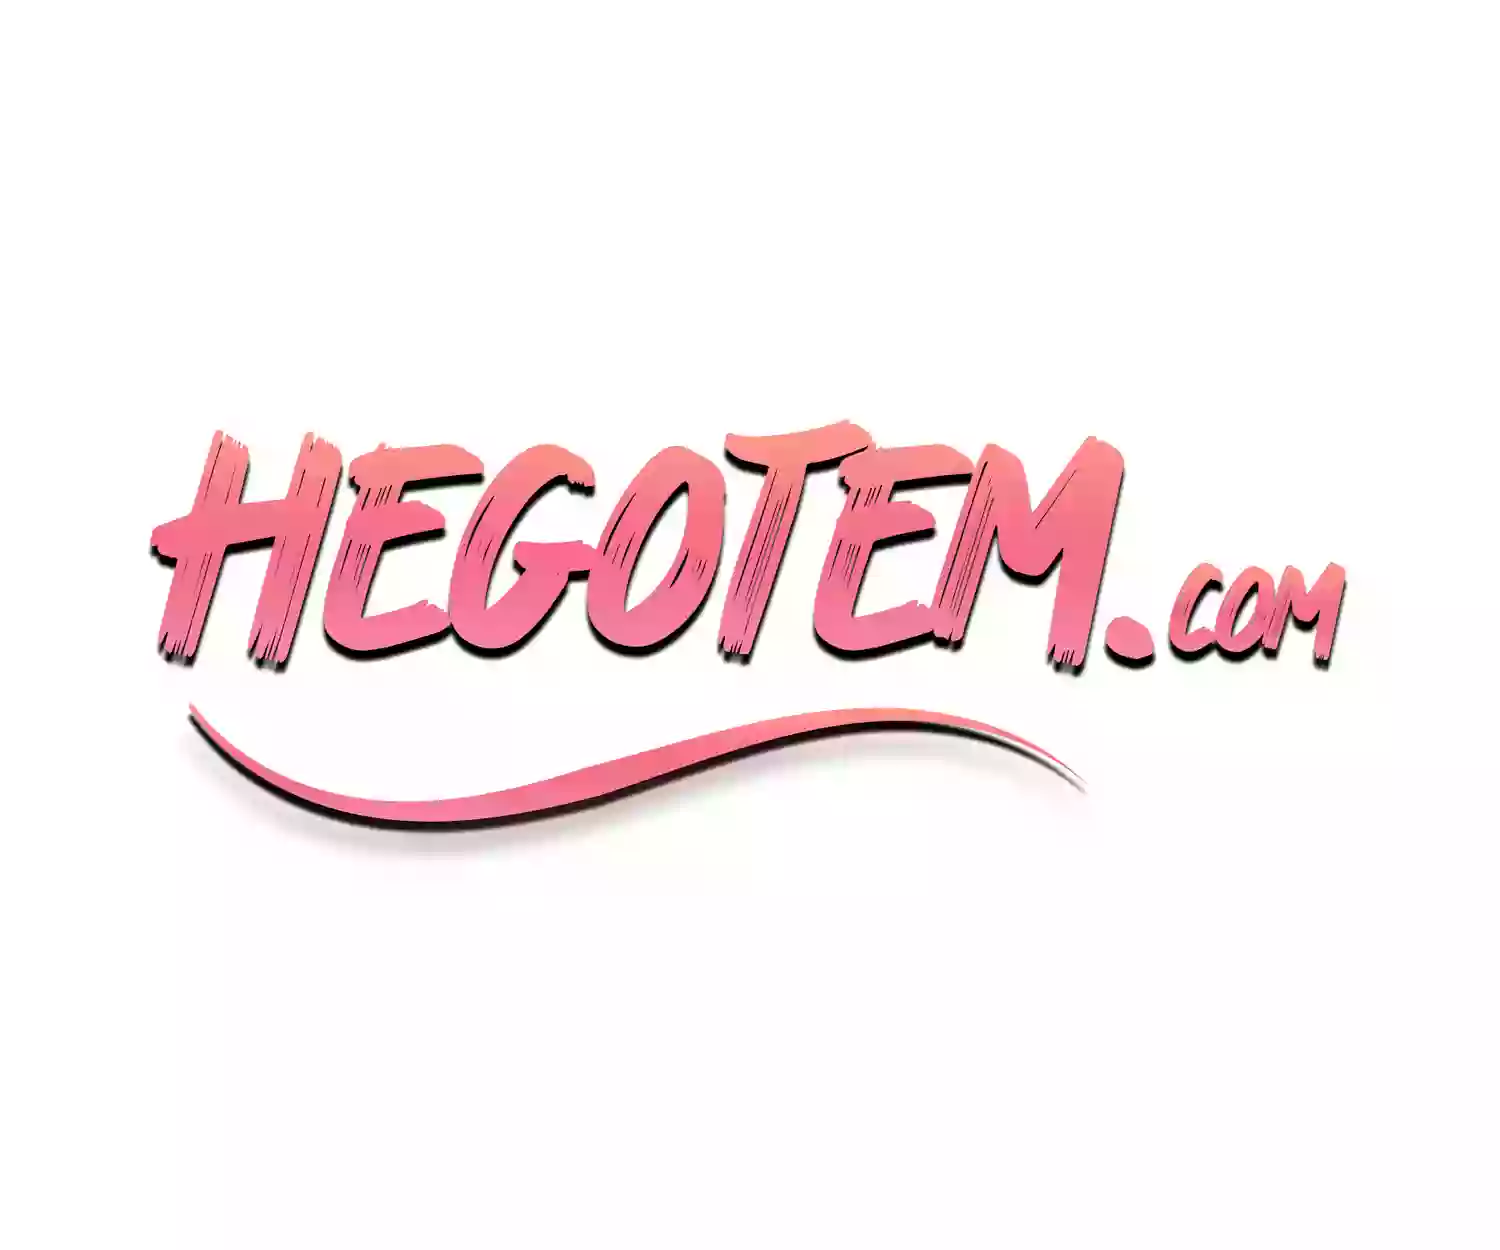 HeGotEm.com